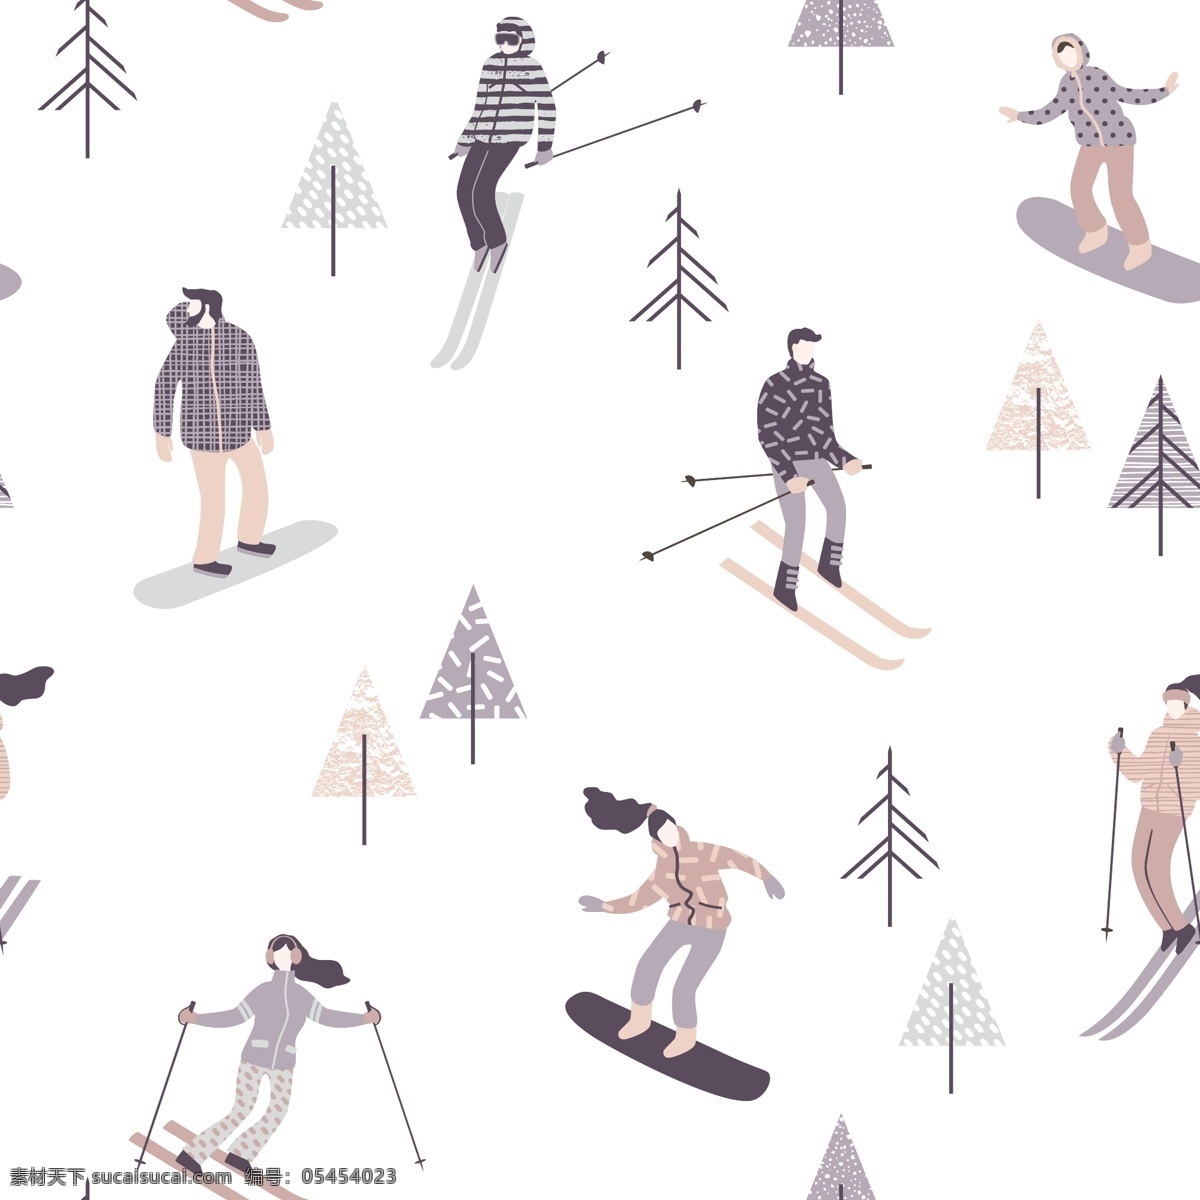 冬日 雪地 滑雪 背景 矢量 白雪 卡通 平面素材 设计素材 矢量素材 手绘 树木